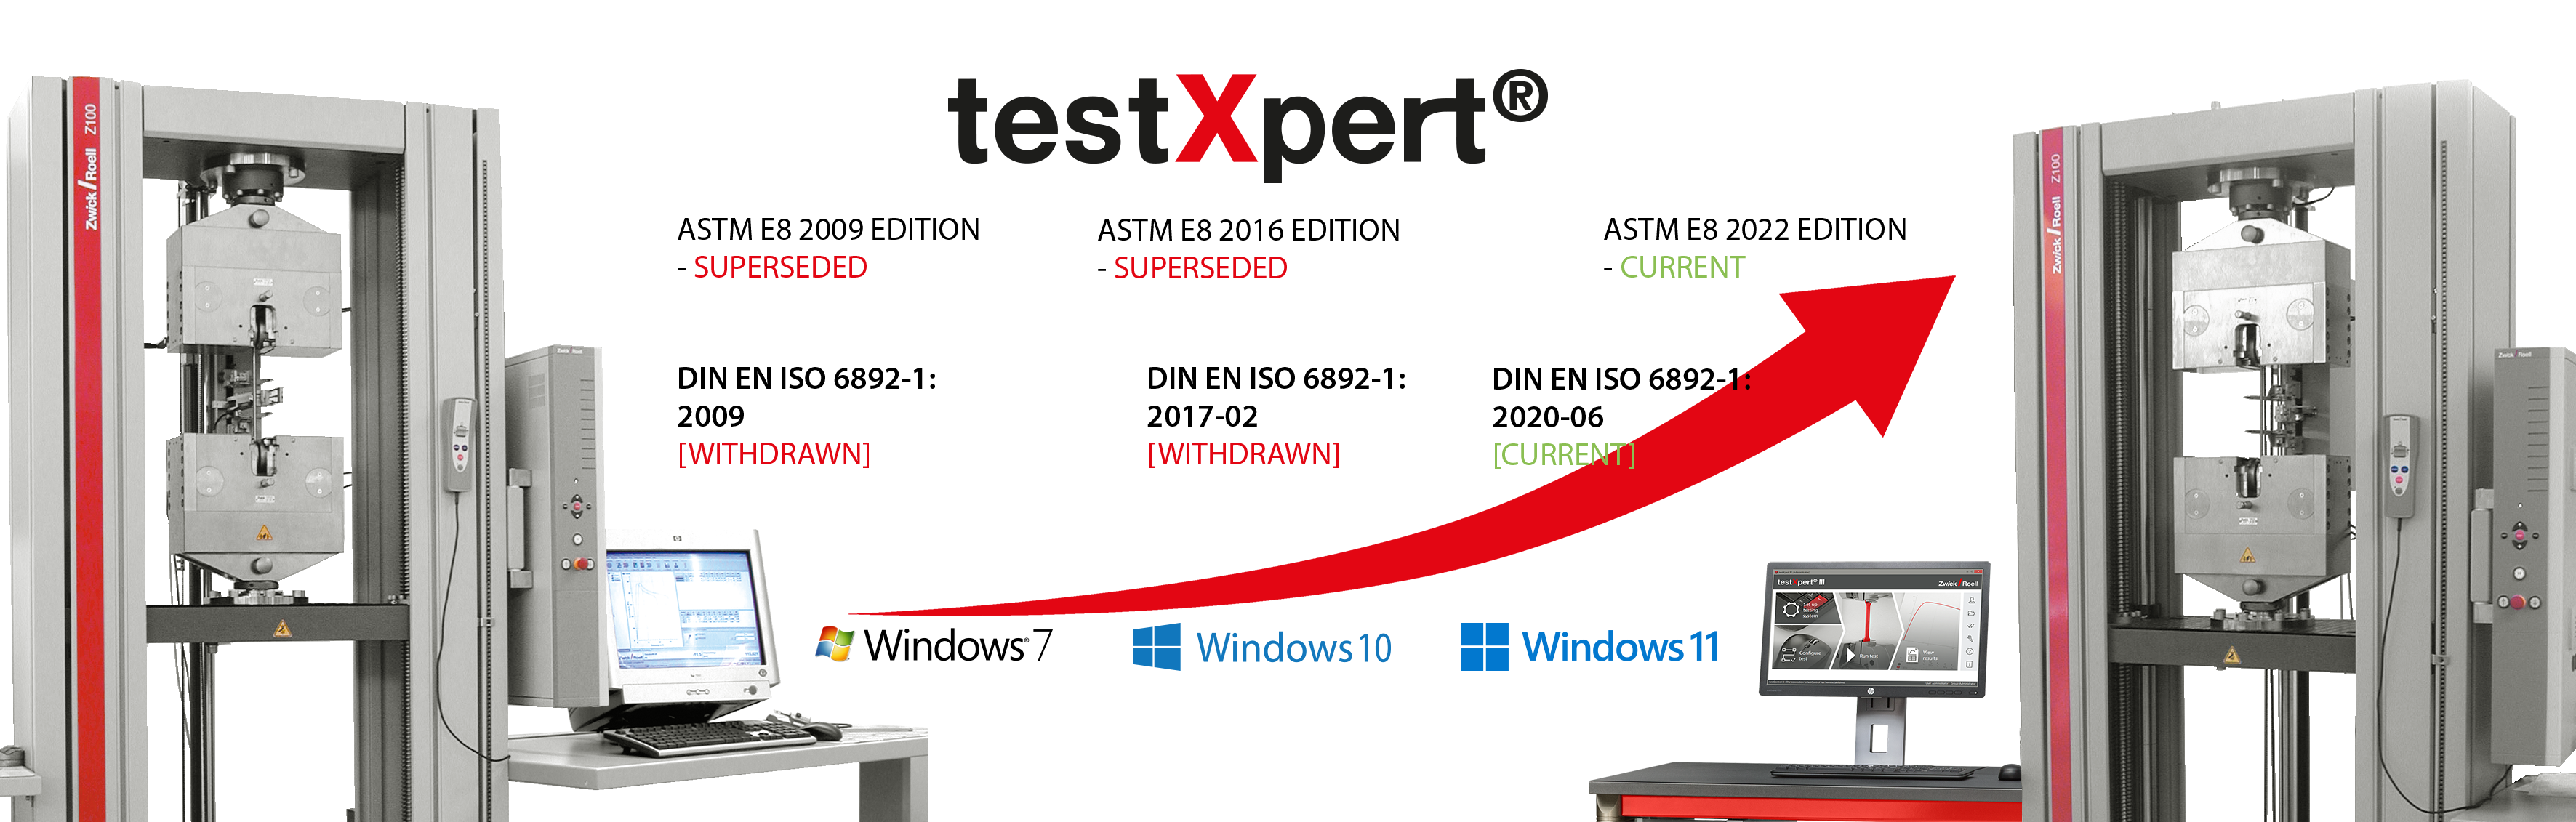 testXpert wächst mit, egal ob sich eine Norm ändert oder ein neues Betriebssystem eingeführt wird